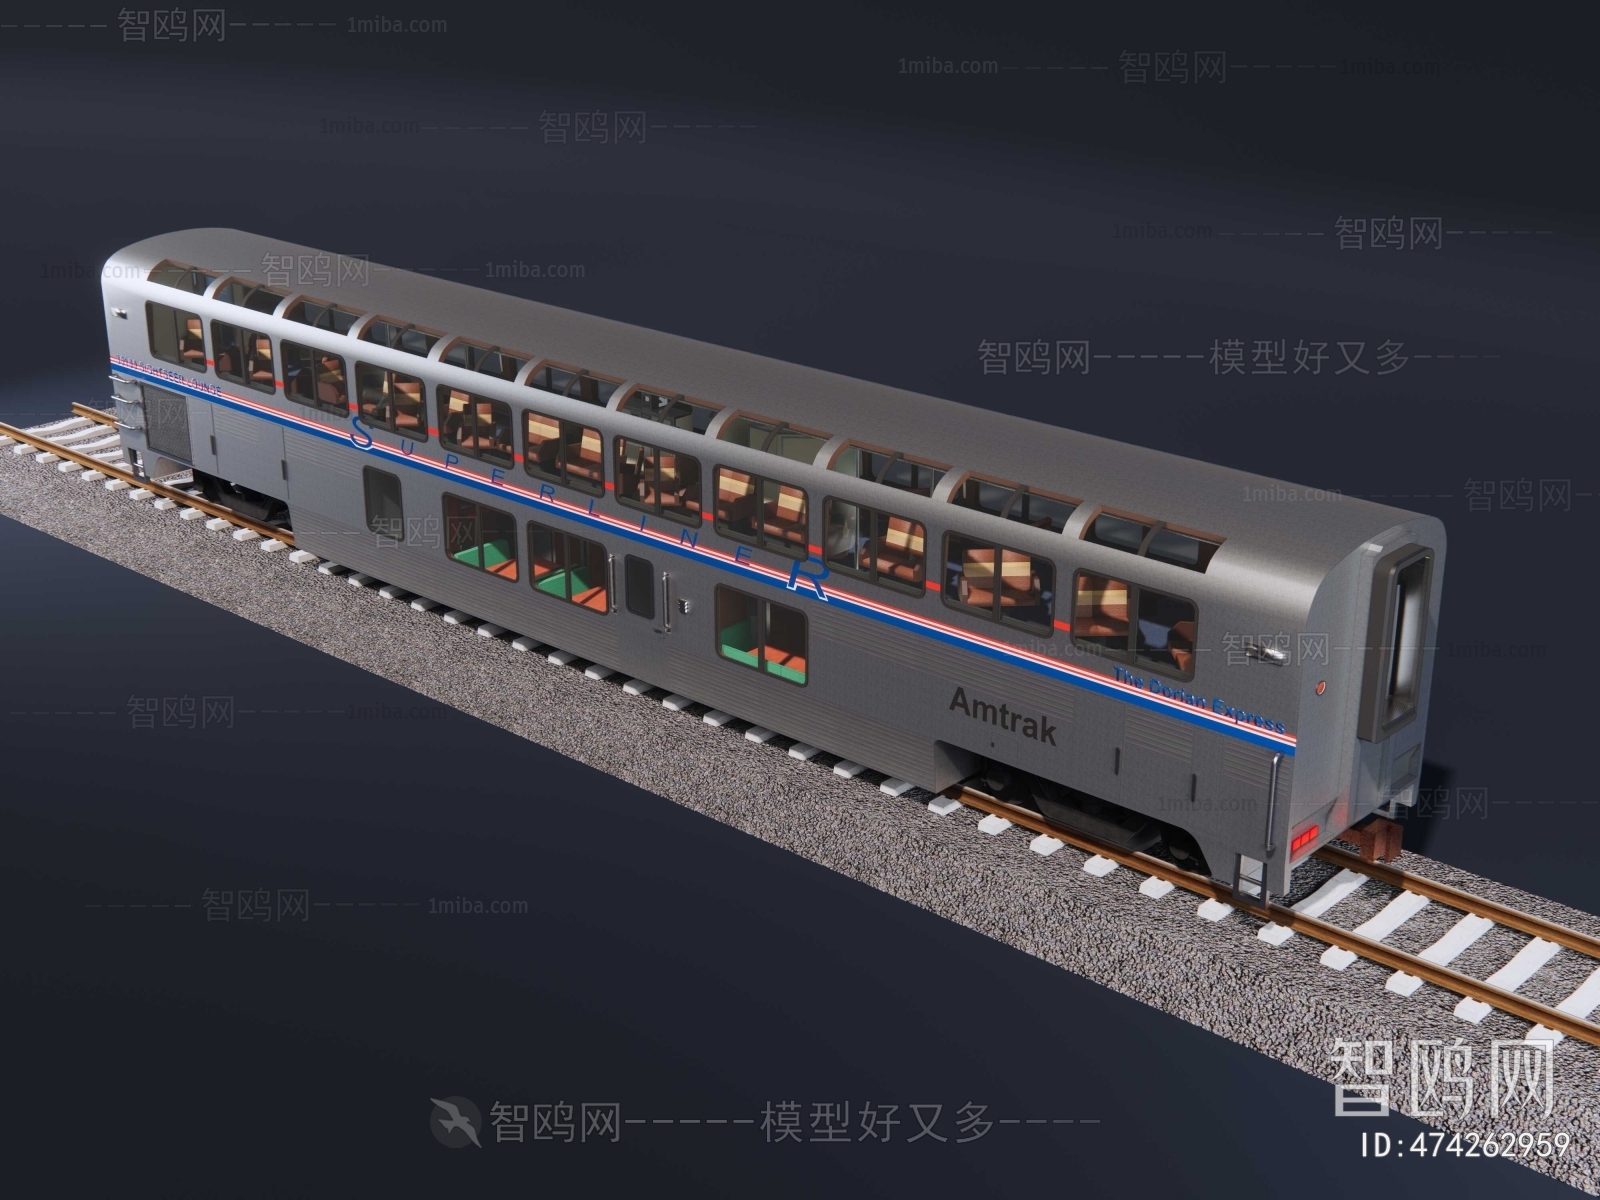 Modern Rail Car